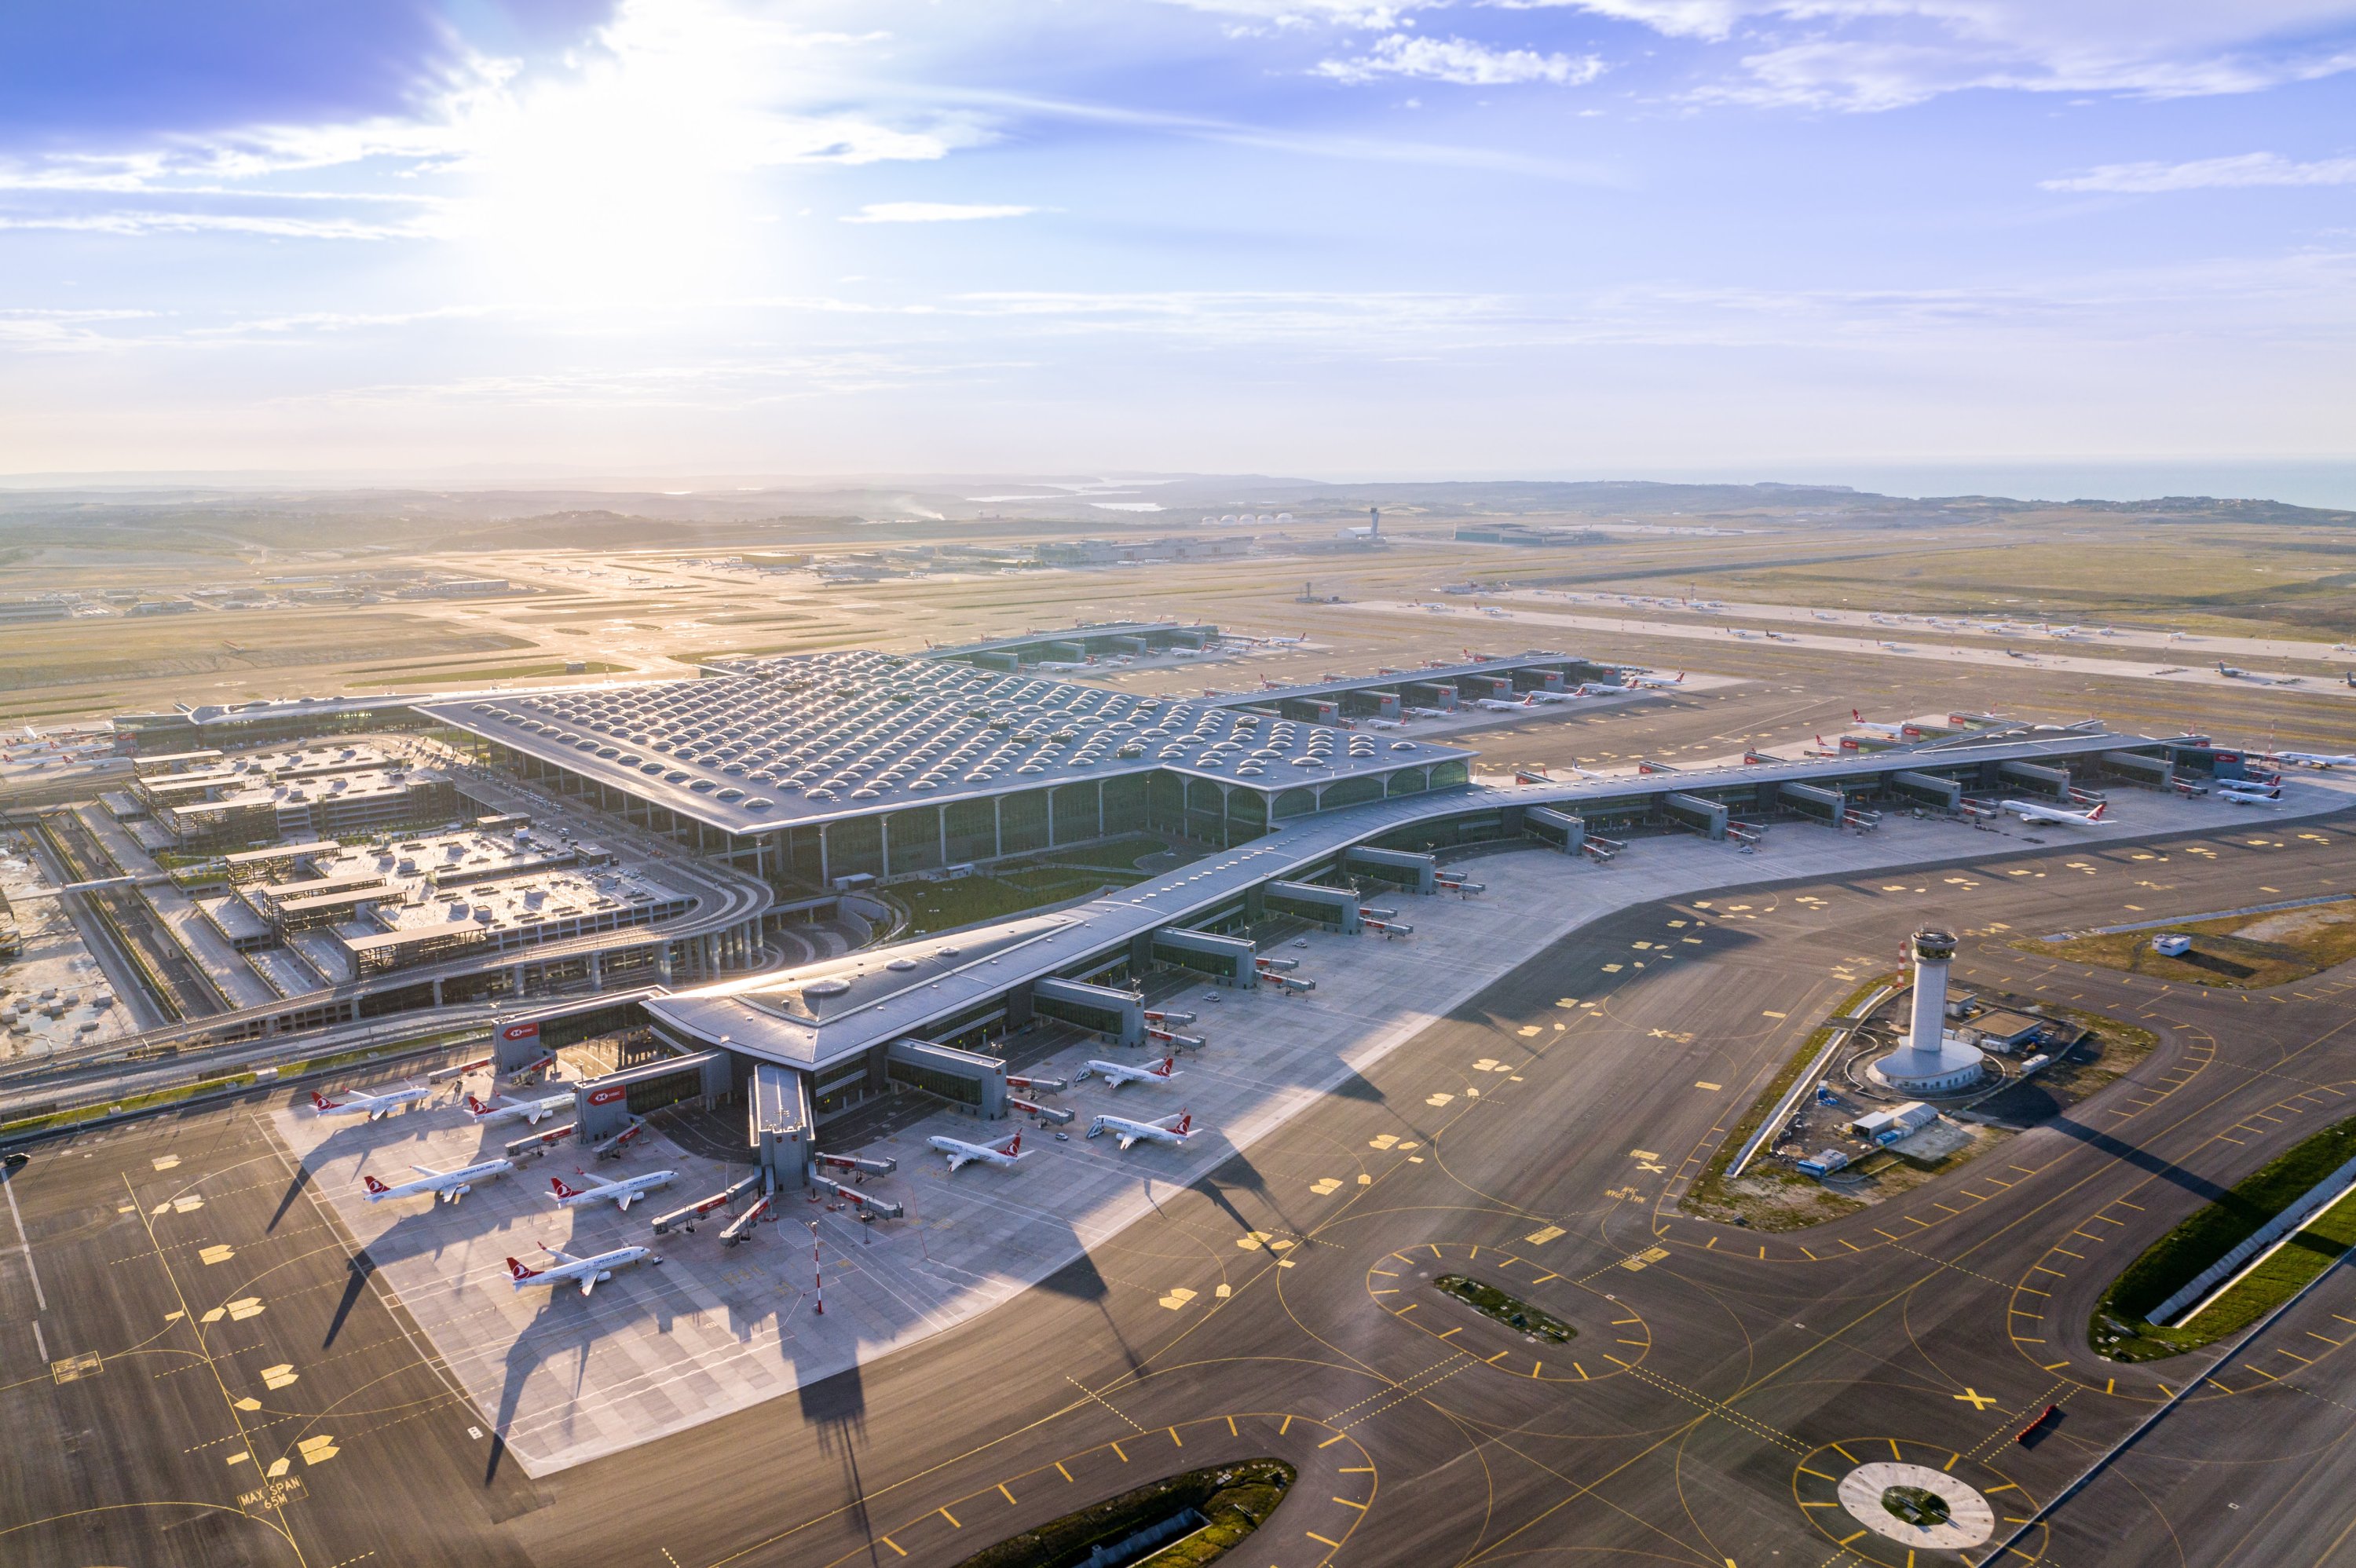 Стамбул новый аэропорт сайт. Аэропорт Стамбула ist. Аэропорт Стамбула Havalimani. Аэропорт Истанбул новый. Новый аэропорт Стамбула Istanbul Havalimani.